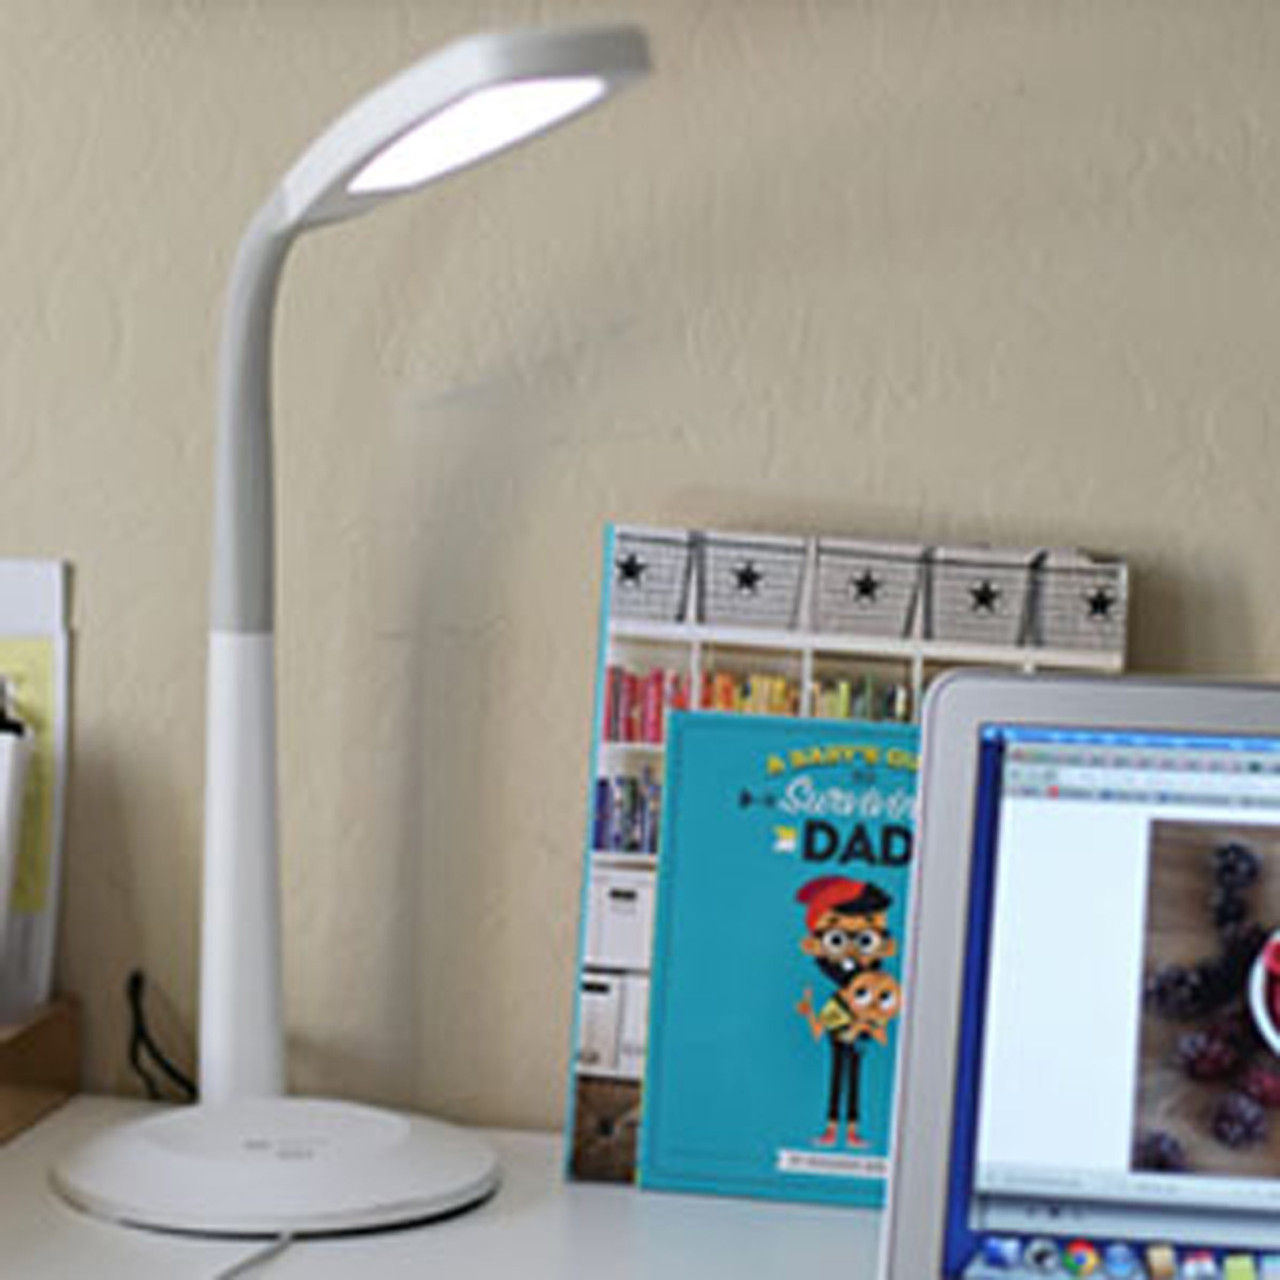 image: LED flex desk lamp, on desk